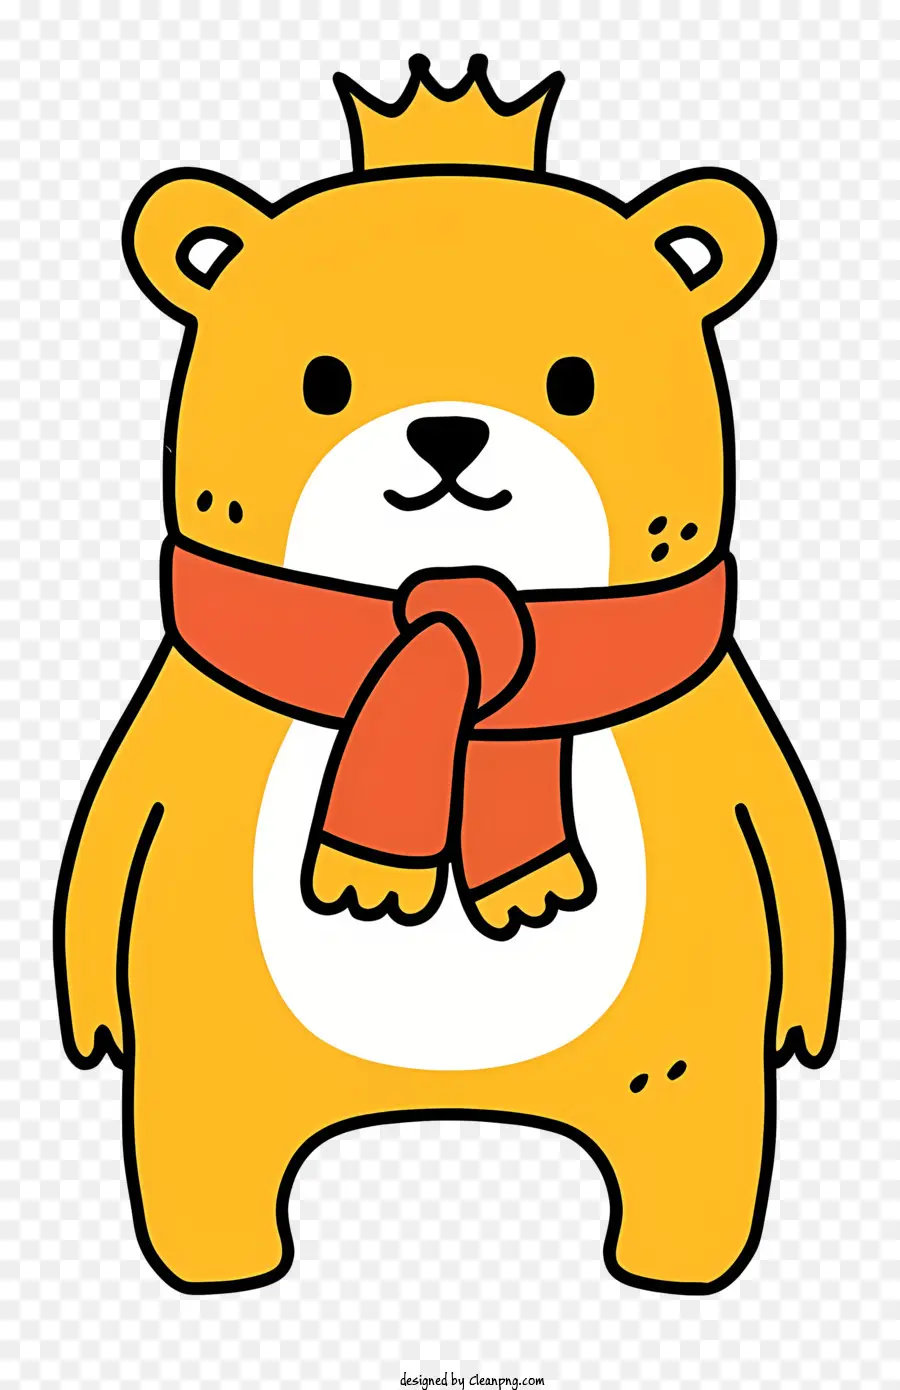 Cartoon Cartoon Bear Red Scarf Smiling Bear Brown Coat - Orso di cartone animato con sciarpa rossa, sorridendo con gli occhi chiusi